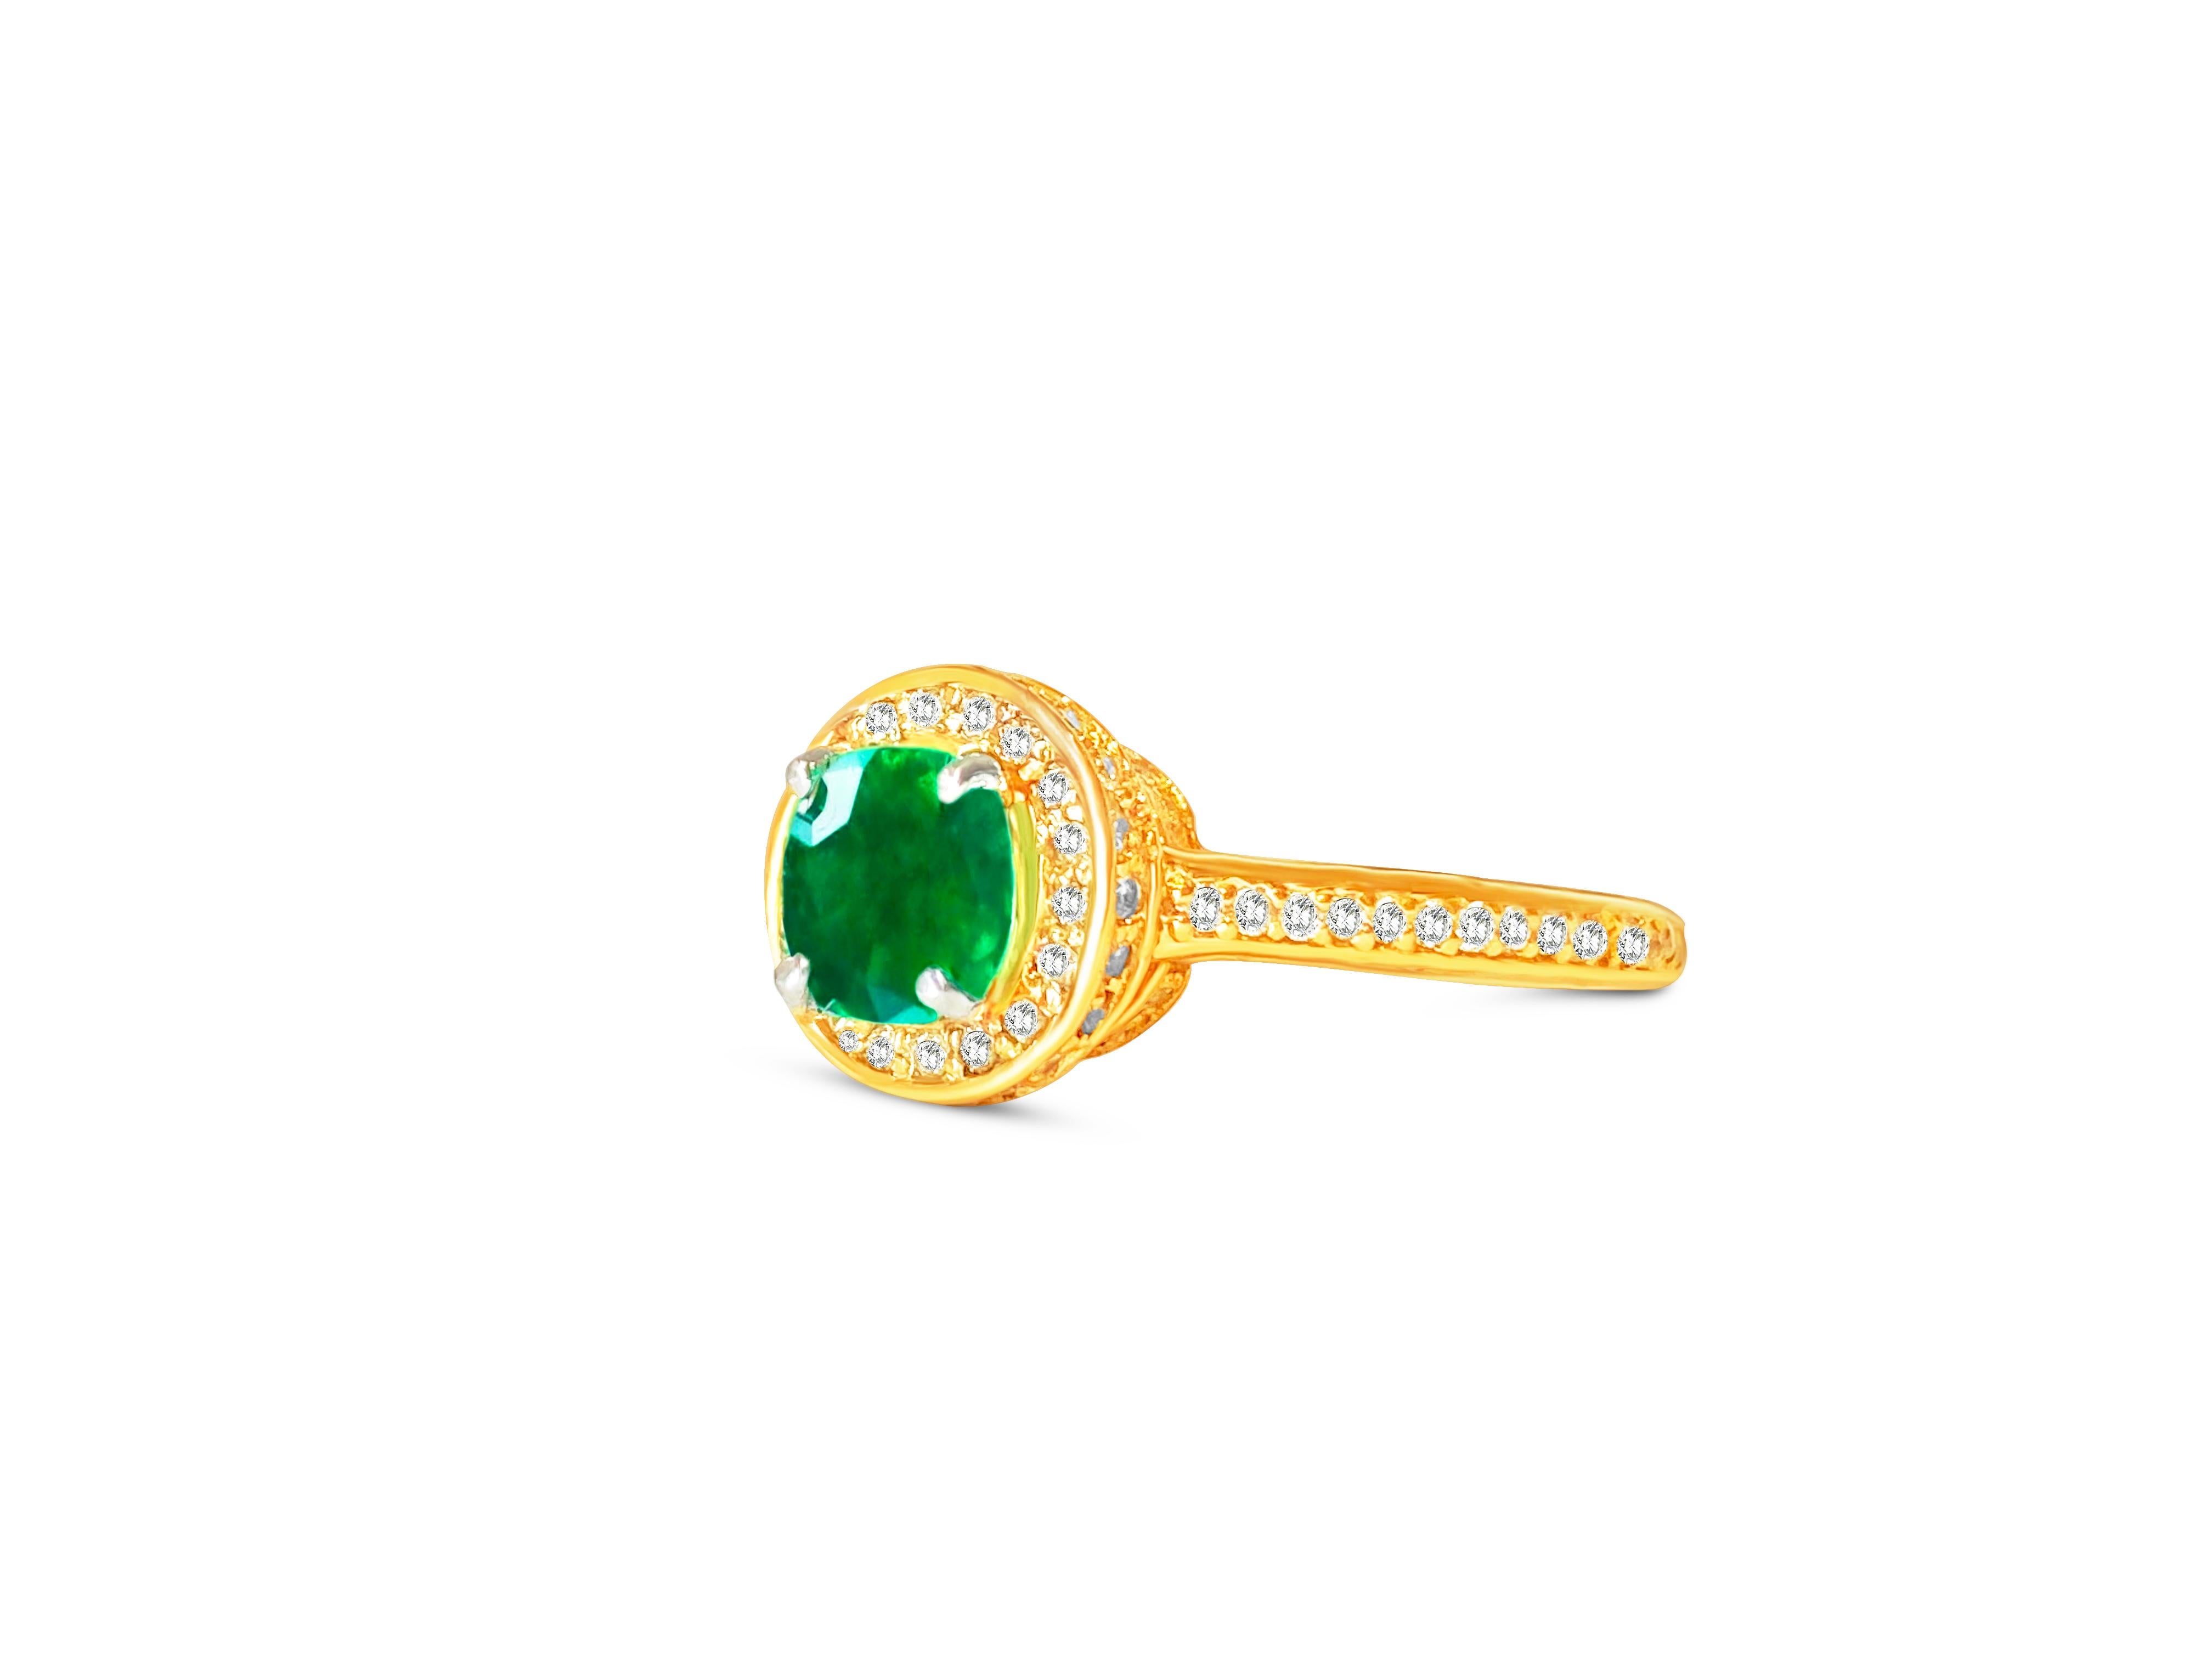 Dieser Verlobungsring aus elegantem 14-karätigem Roségold besticht durch einen kolumbianischen Smaragd von 1,25 Karat in der Mitte, der in einer zierlichen Zackenfassung gefasst ist. Der Smaragd ist von schimmernden Diamanten von insgesamt 1,00